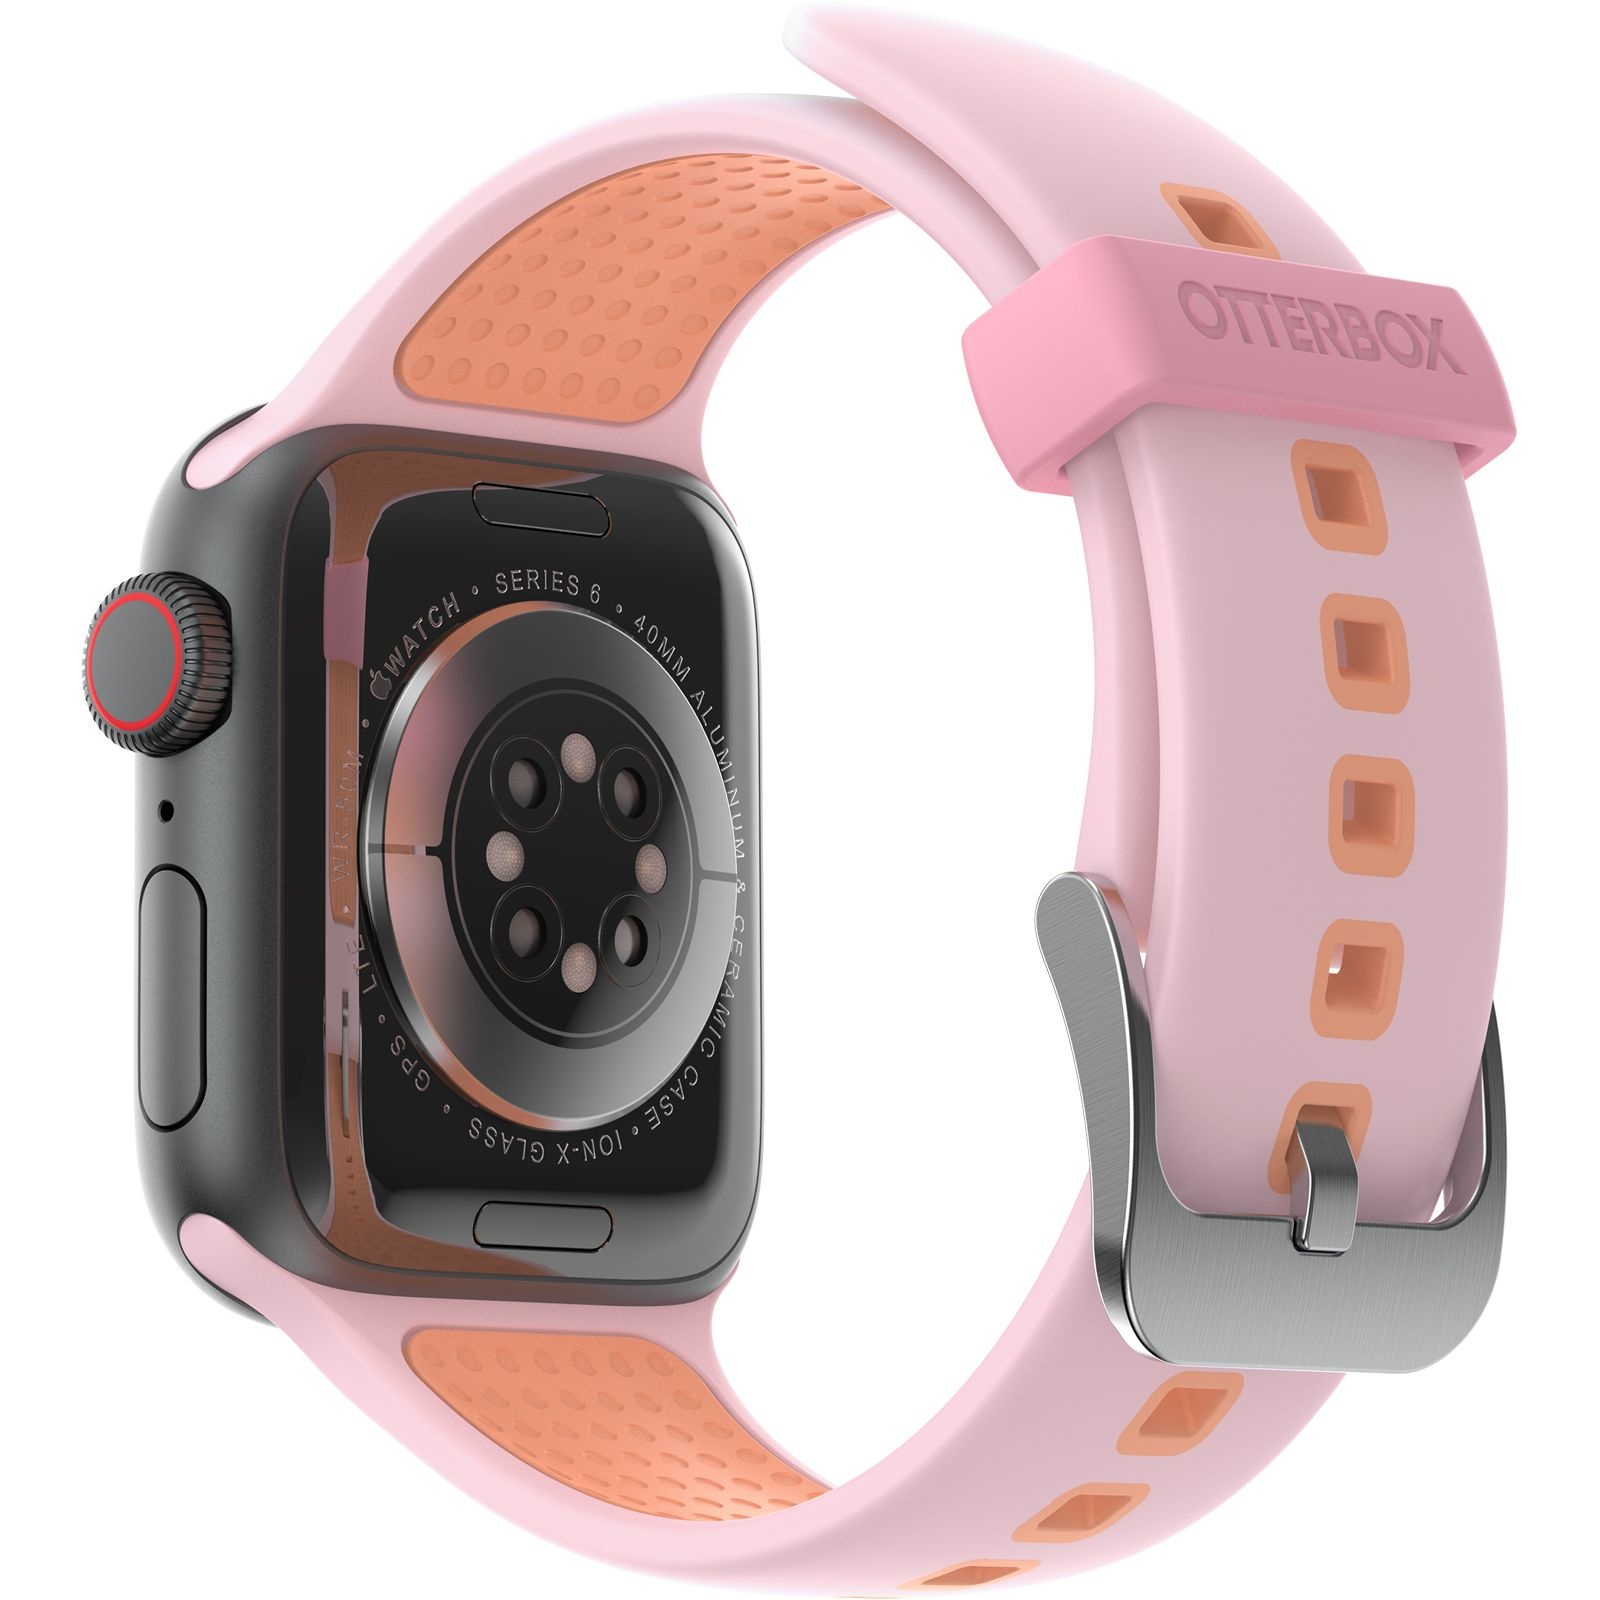 Otterbox band voor de Apple watch - Roze/Oranje Smartwatchbanden.nl